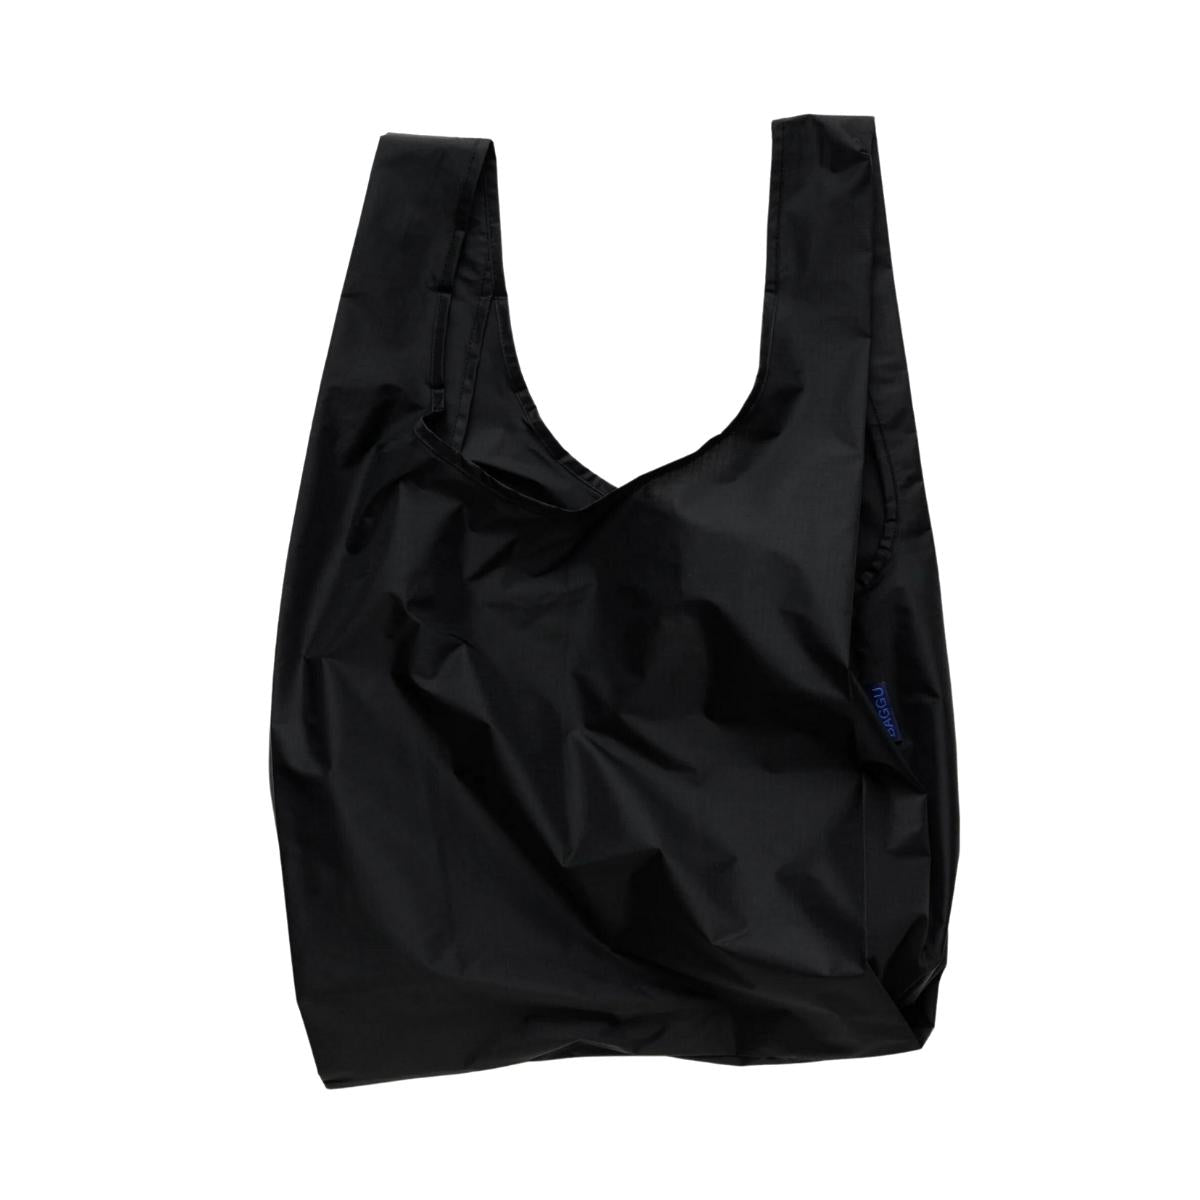 Baggu Standard Bag in Black